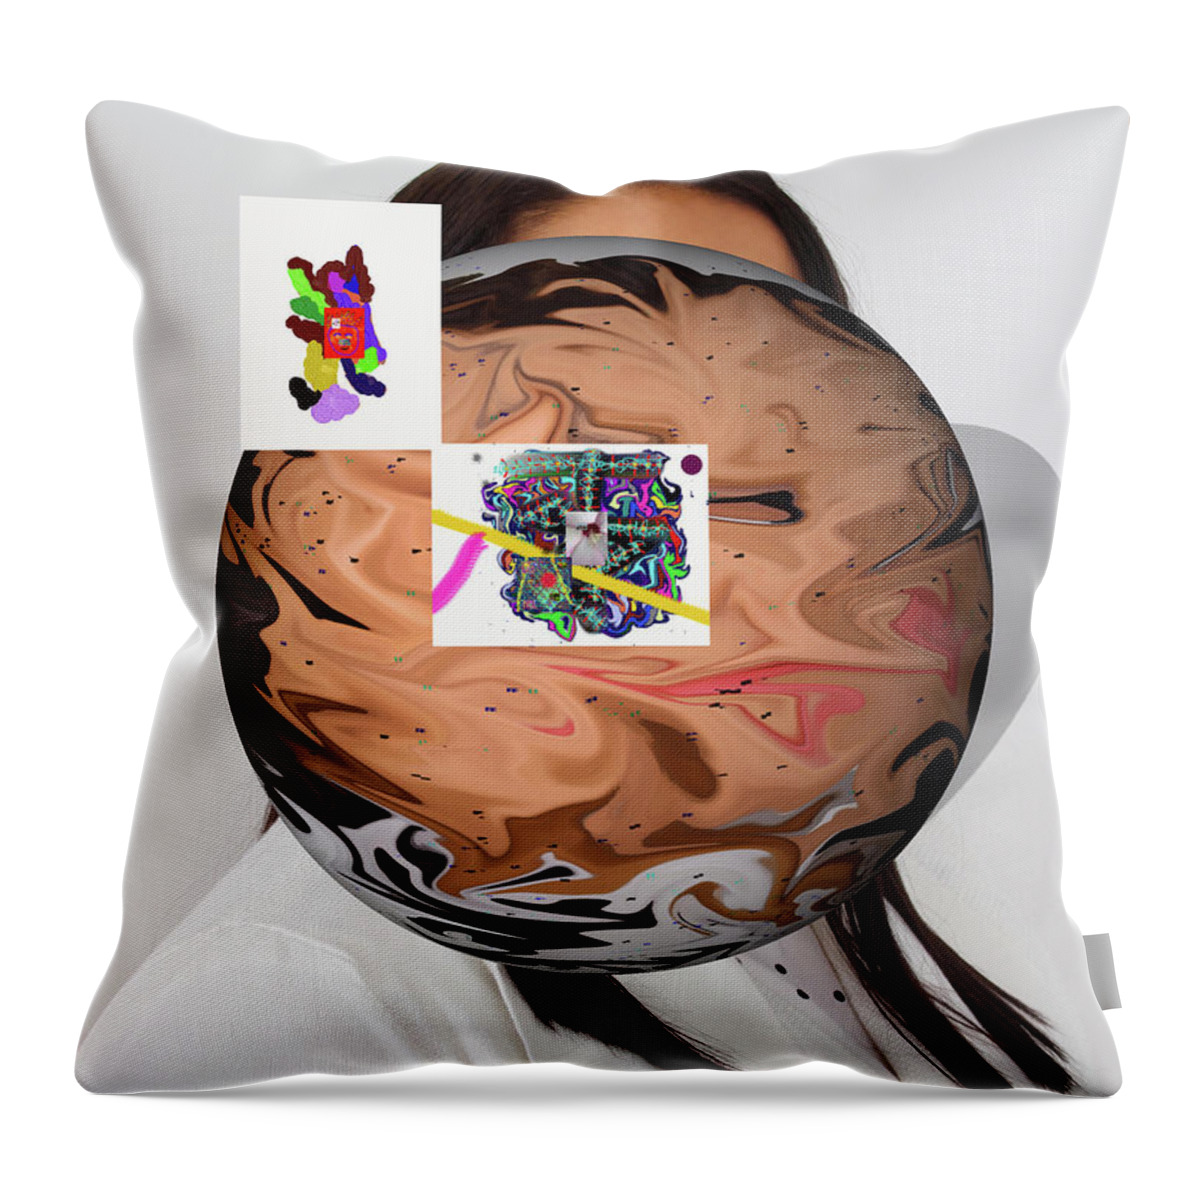  Throw Pillow featuring the digital art 8/13/2019a by Walter Paul Bebirian